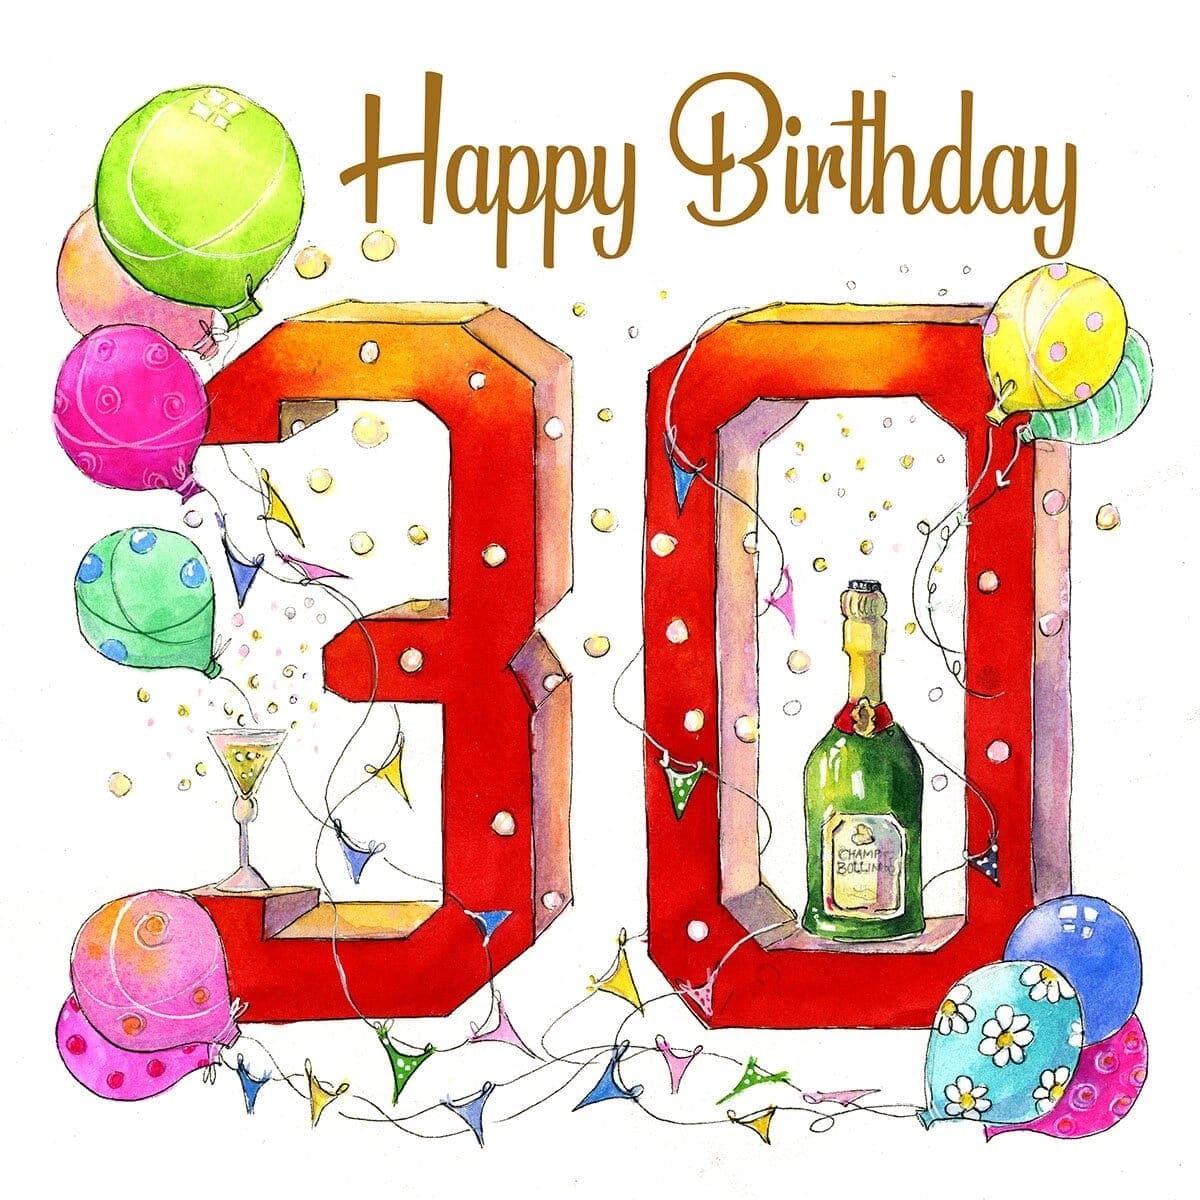 Happy 30th Birthday Card designed by artist Sheila Gill